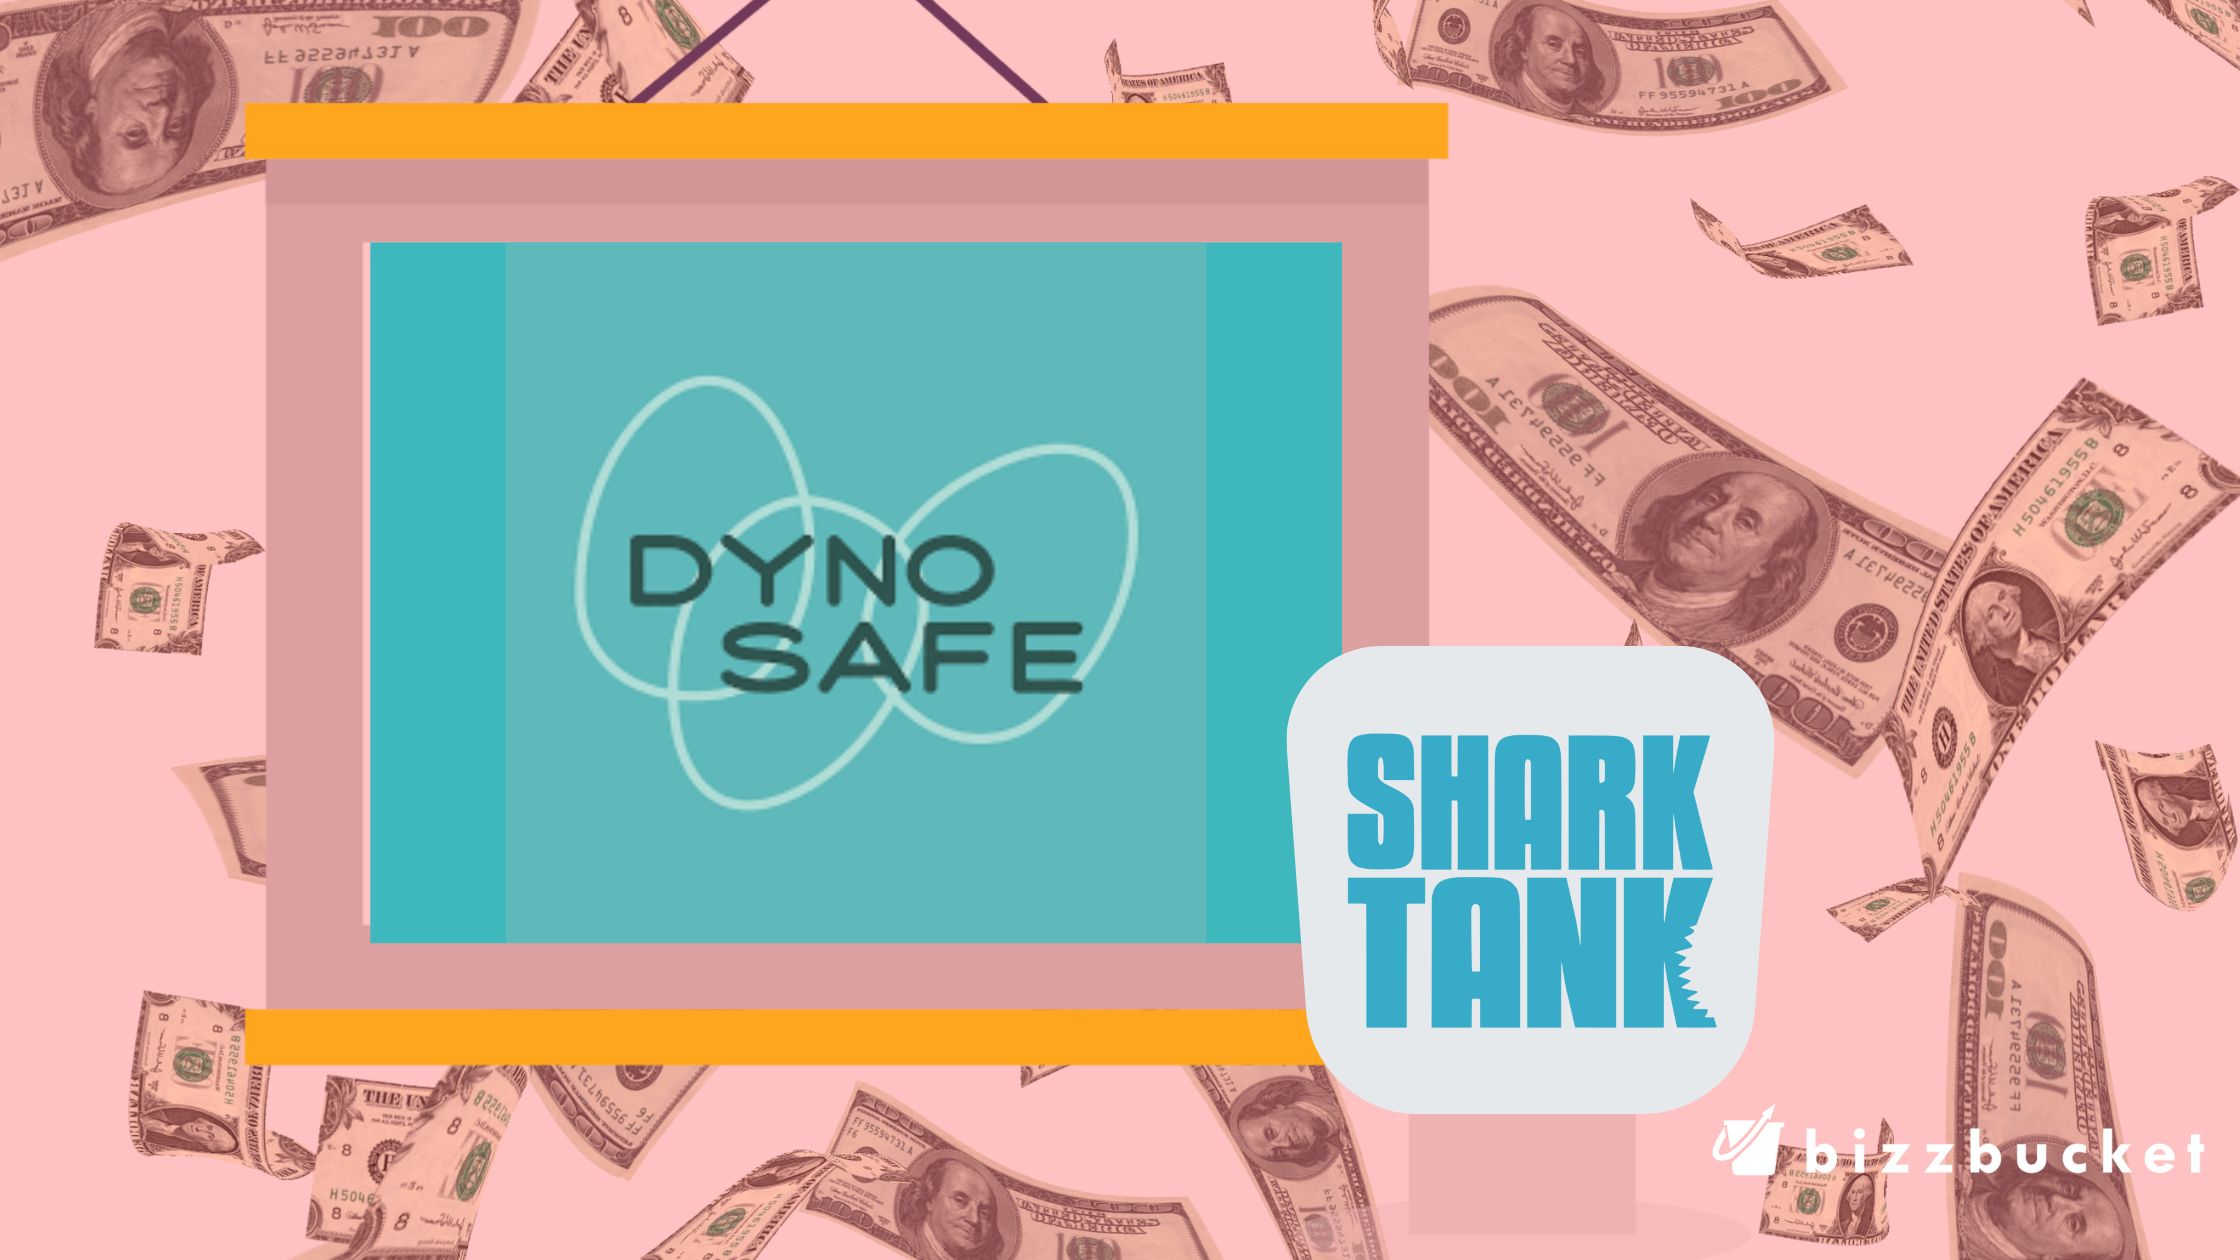 DynoSafe shark tank update